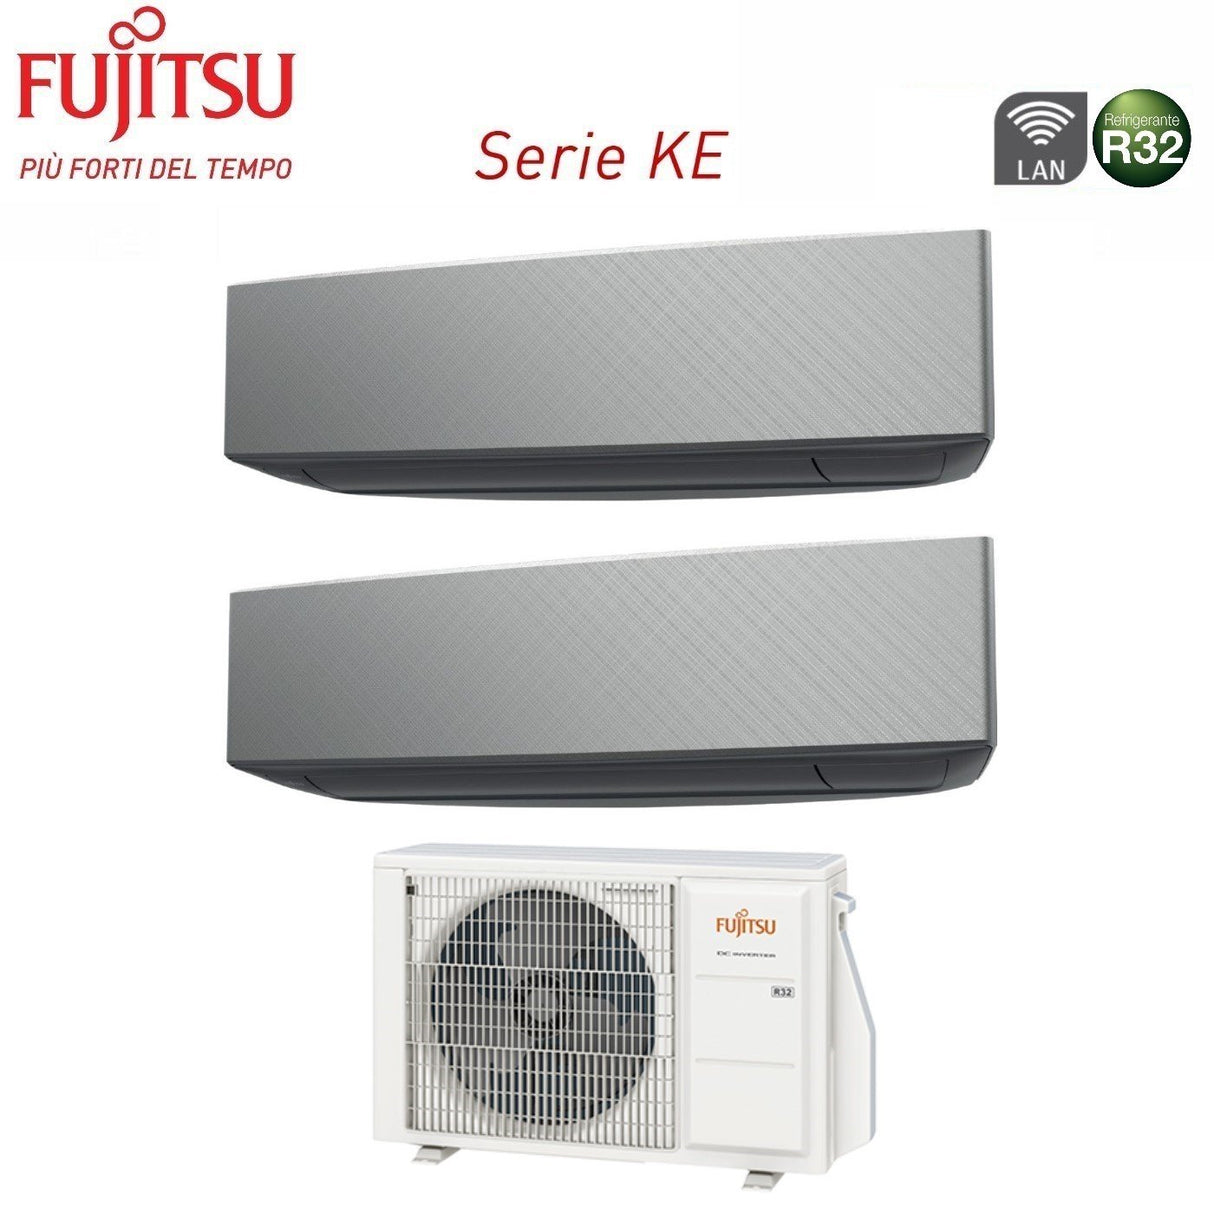 immagine-2-fujitsu-climatizzatore-condizionatore-fujitsu-dual-split-inverter-serie-ke-silver-1212-con-aoyg18kbta2-r-32-wi-fi-integrato-1200012000-colore-argento